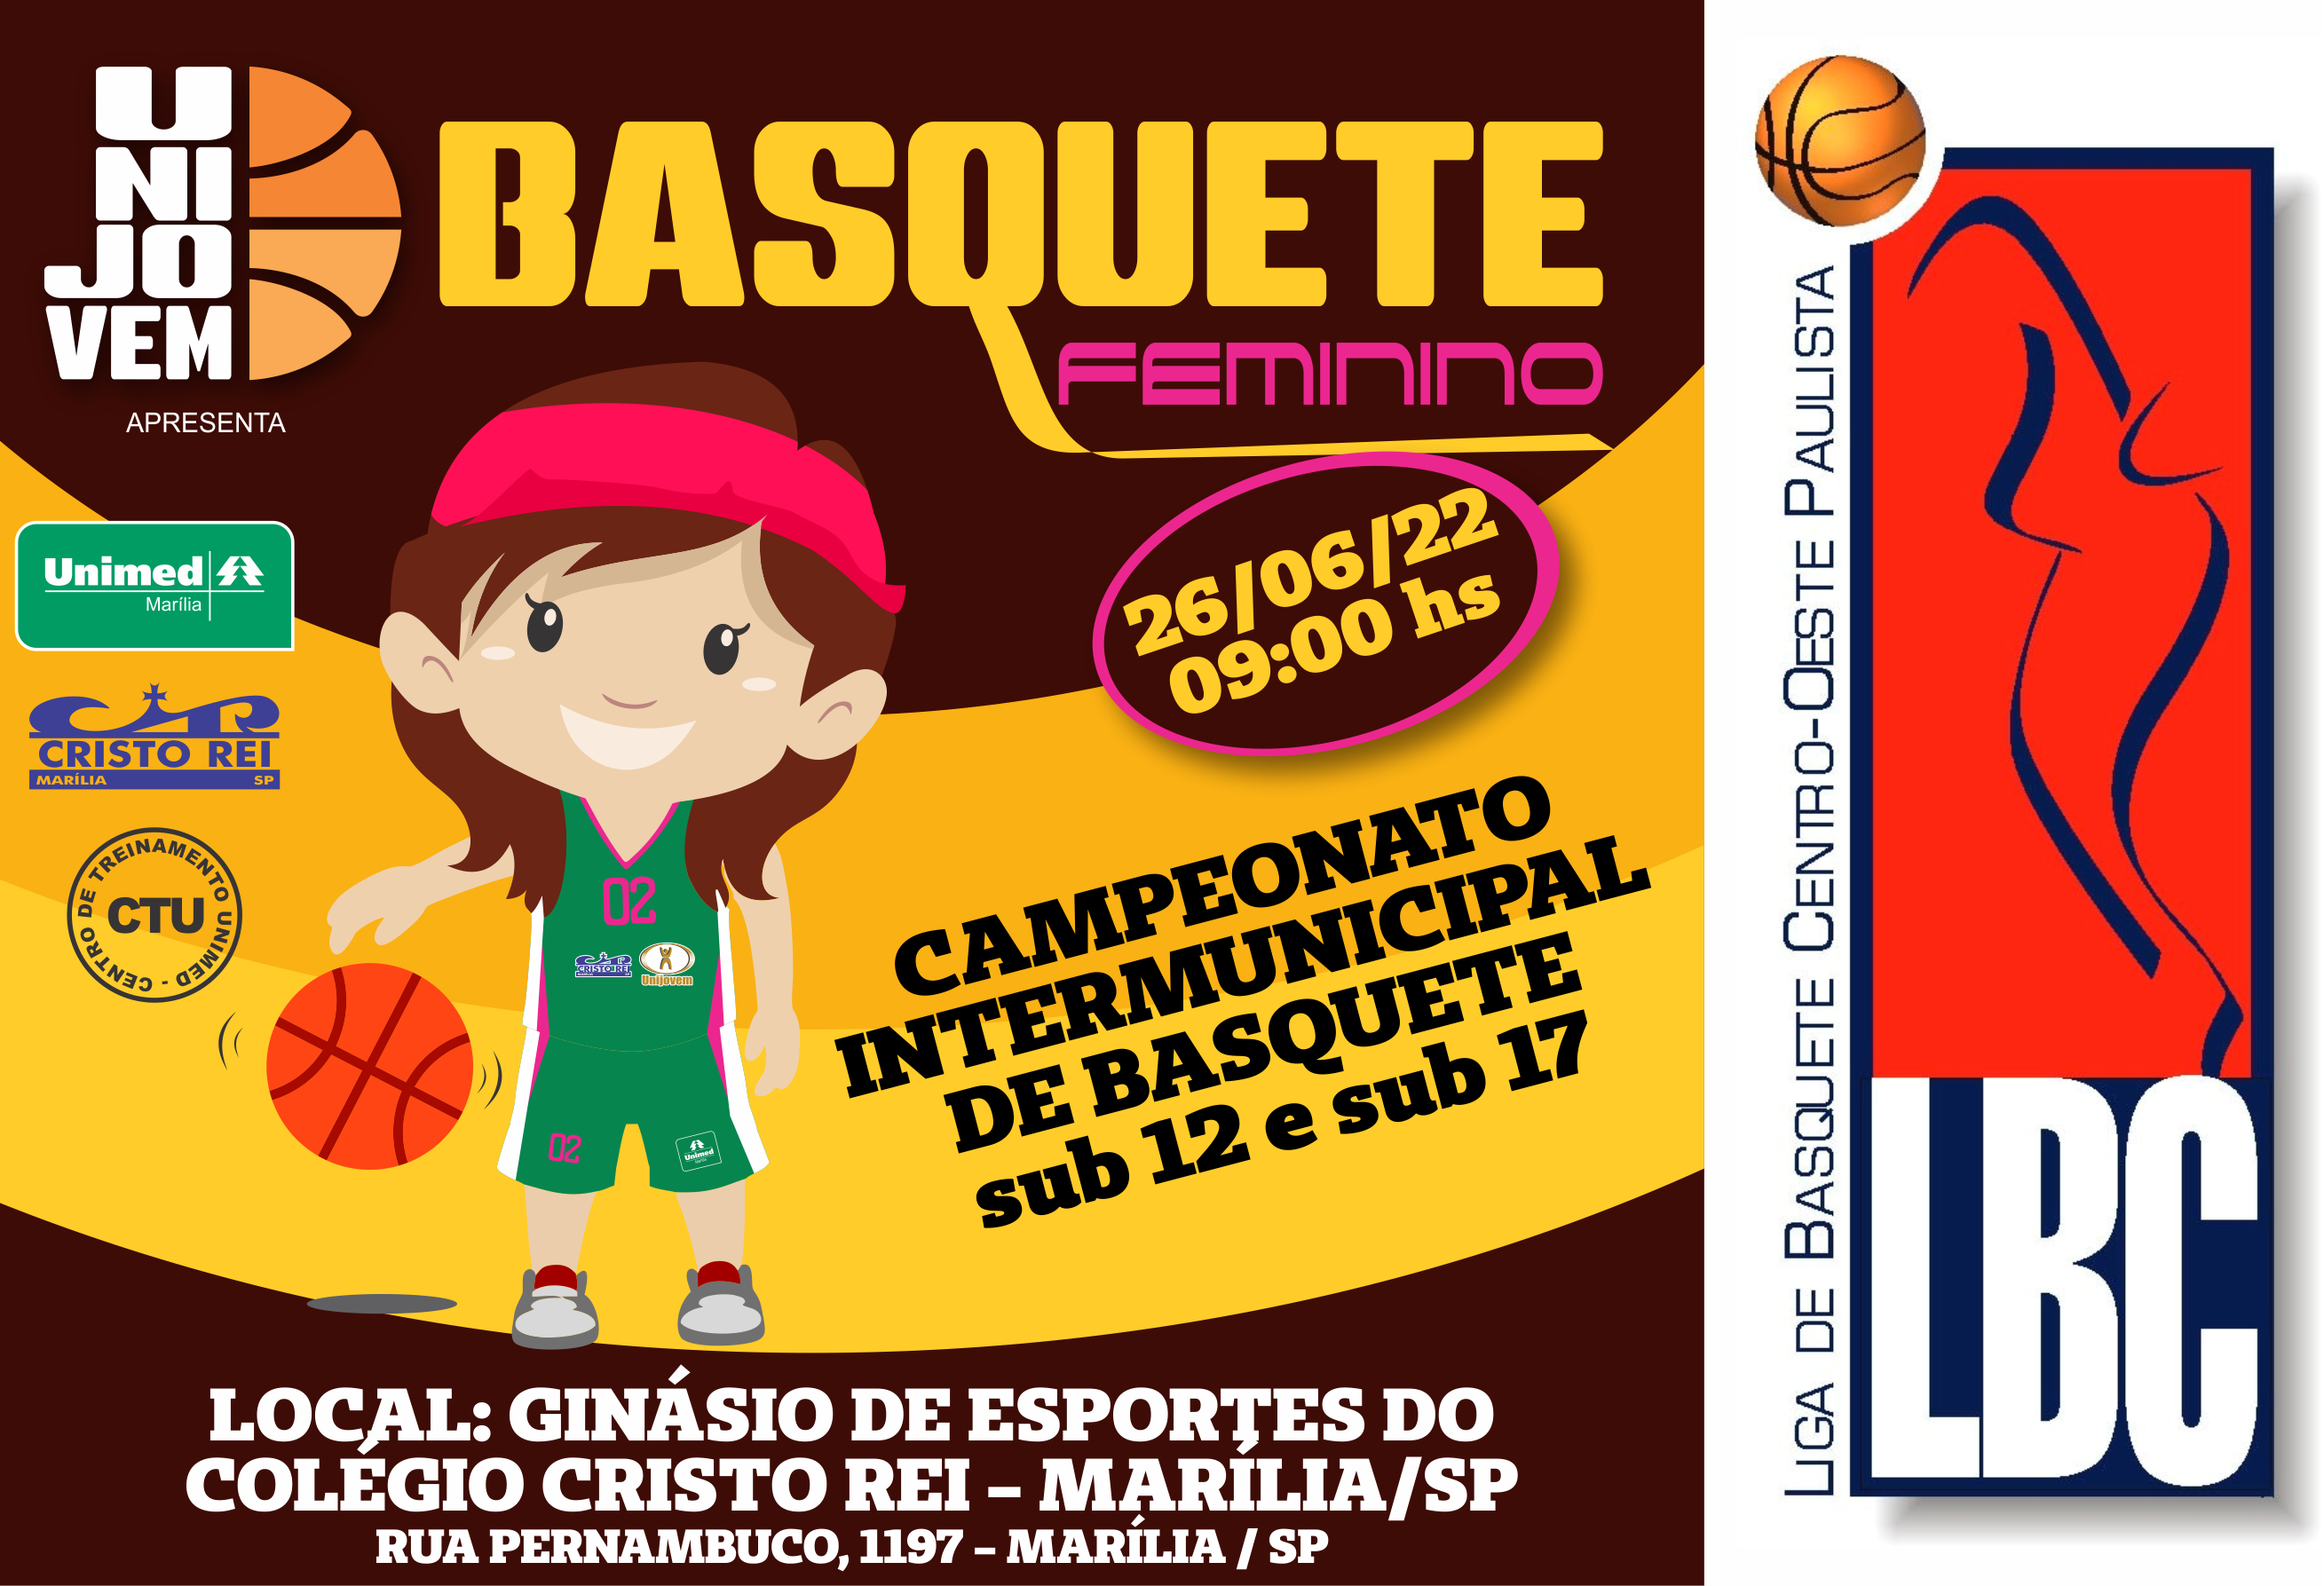 Torneio intermunicipal de basquete feminino acontecerá neste próximo domingo 26/06/2022 no ginásio de esportes do colégio Cristo Rei.